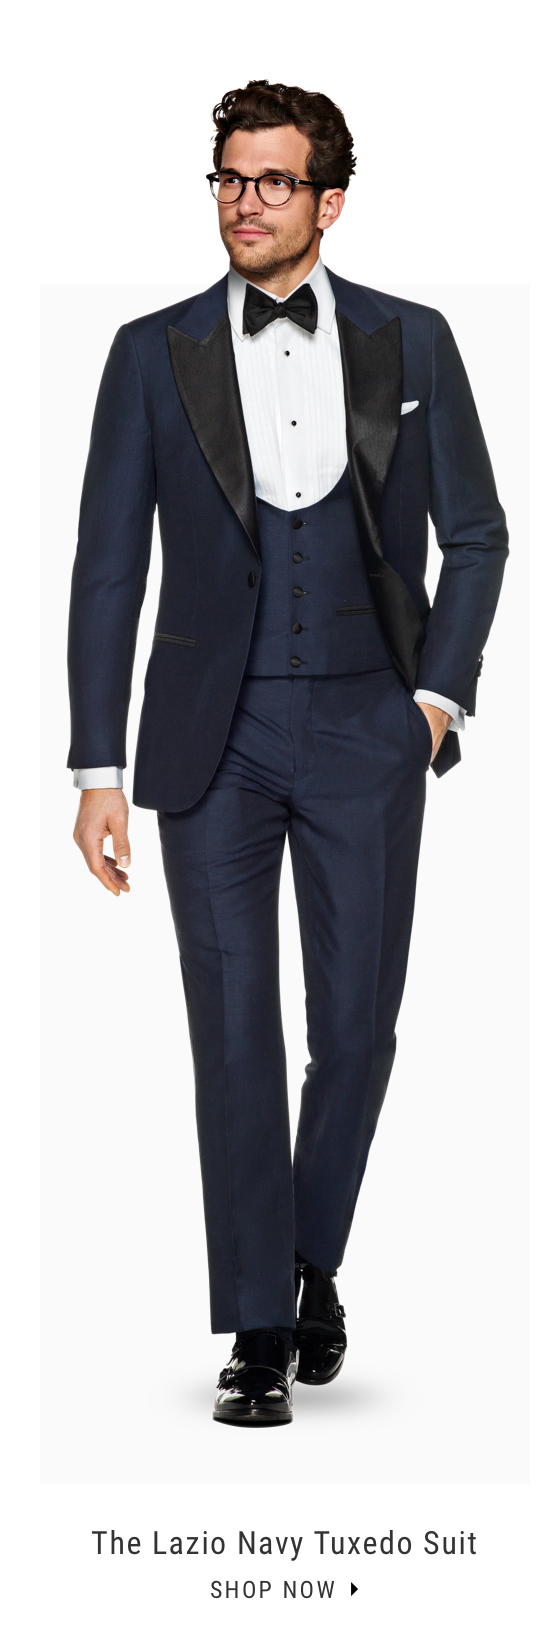 The Lazio Navy Tuxedo Suit